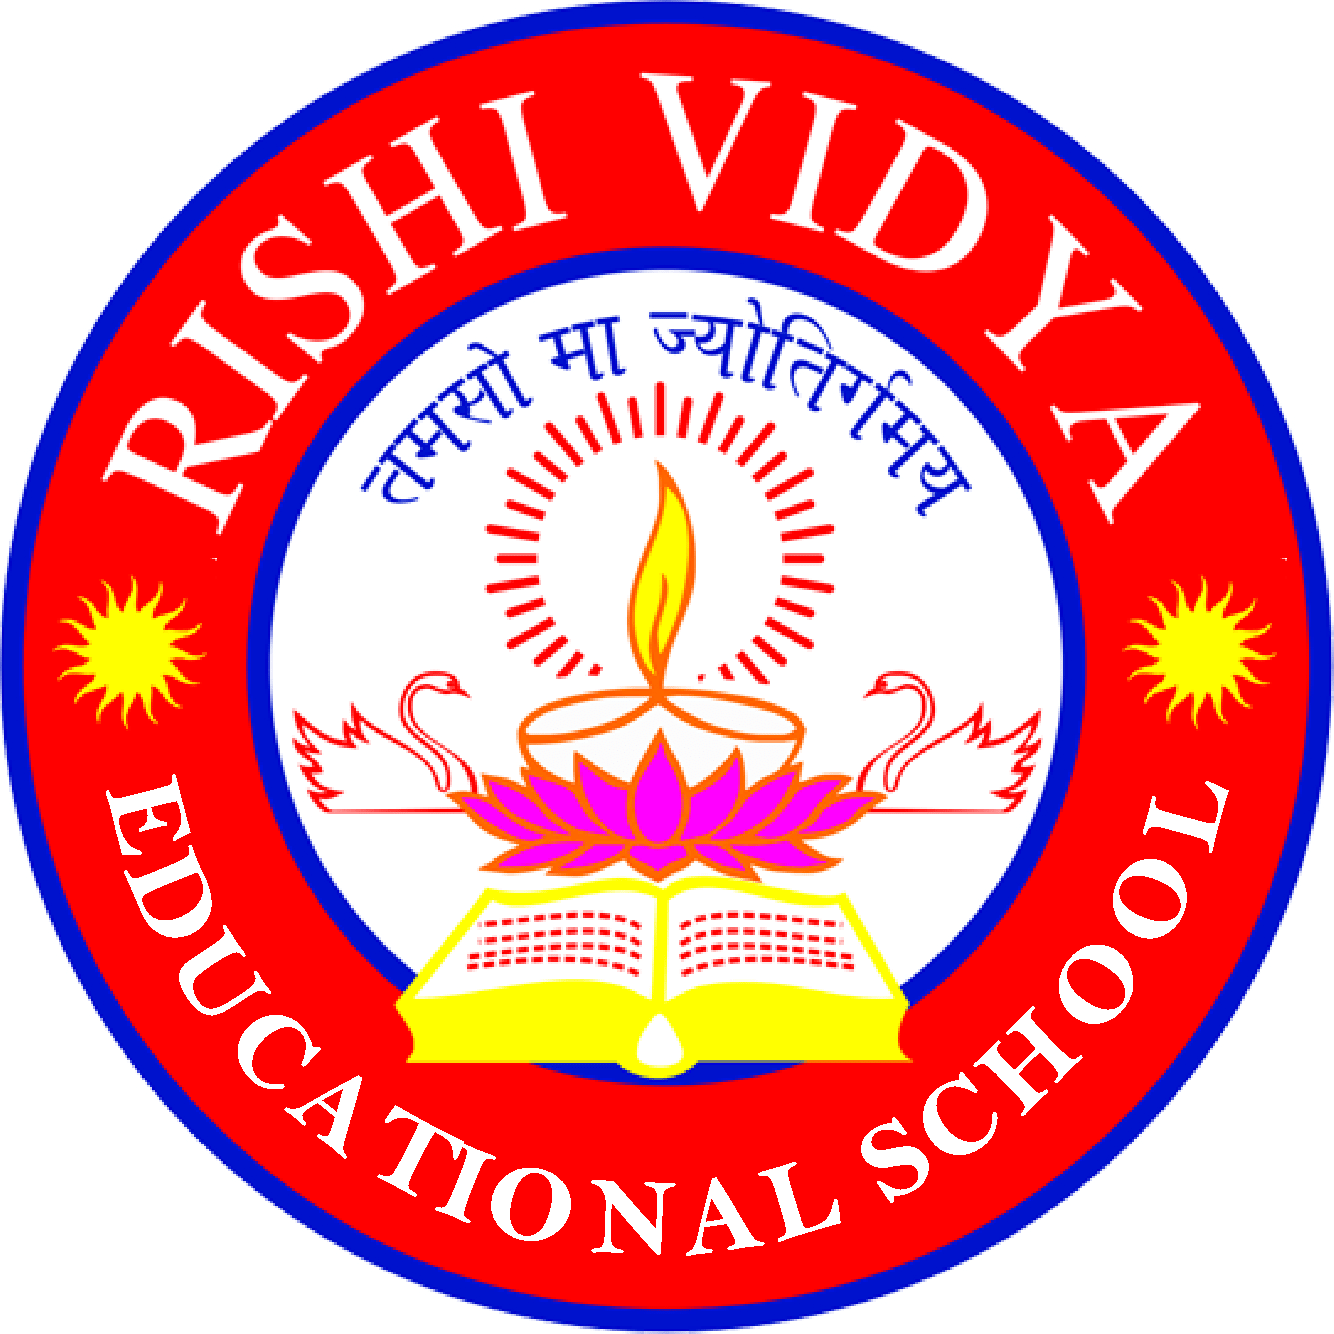 Rishi Vidya Educational